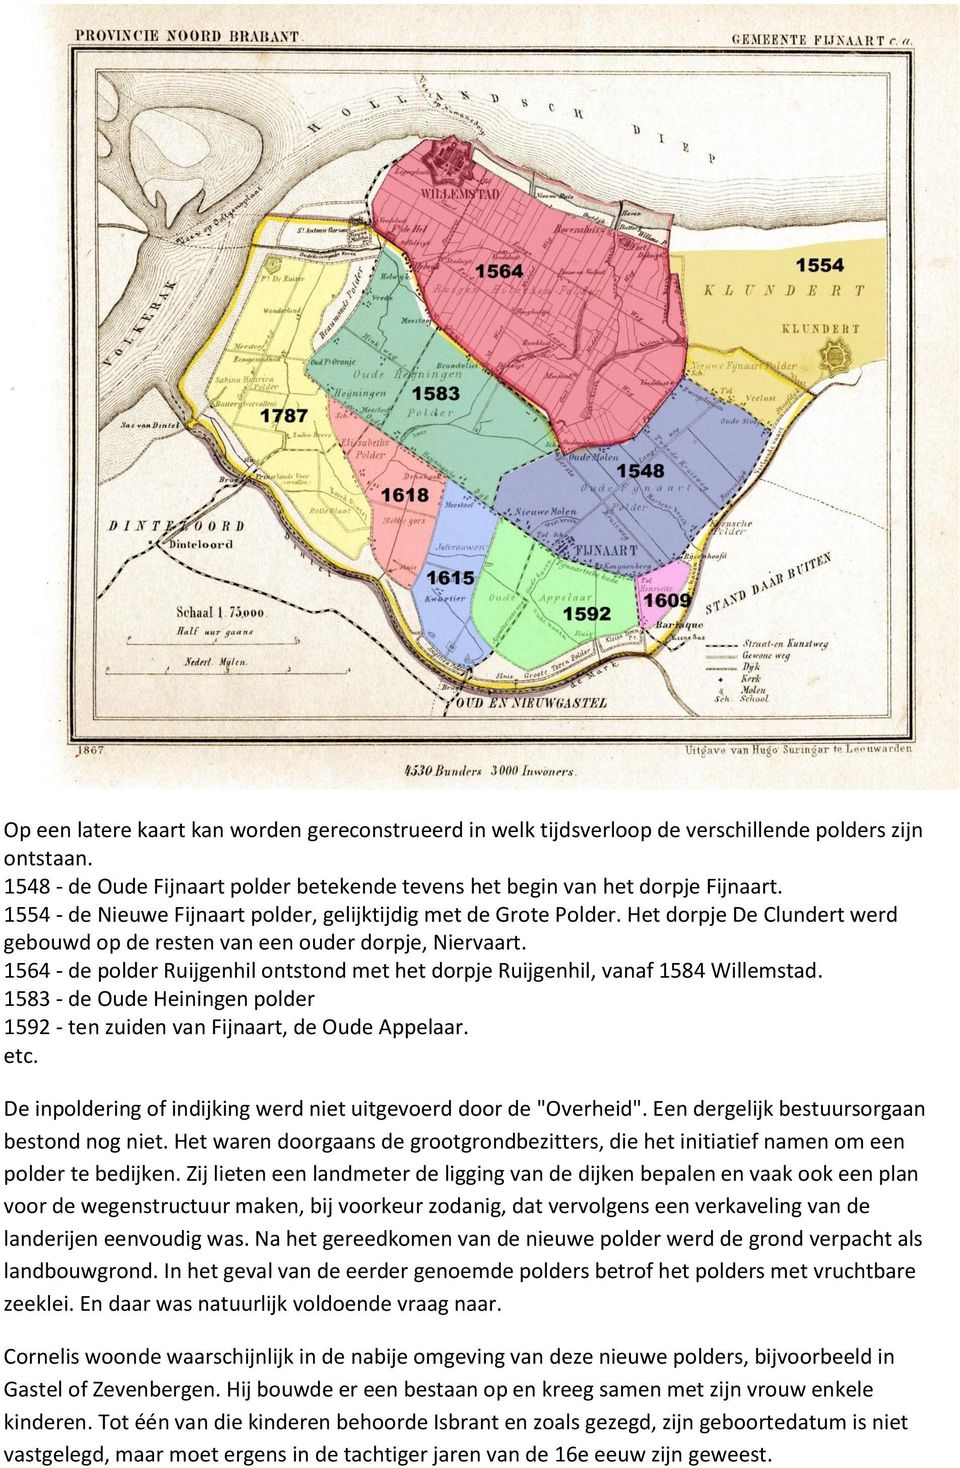 1564 - de polder Ruijgenhil ontstond met het dorpje Ruijgenhil, vanaf 1584 Willemstad. 1583 - de Oude Heiningen polder 1592 - ten zuiden van Fijnaart, de Oude Appelaar. etc.